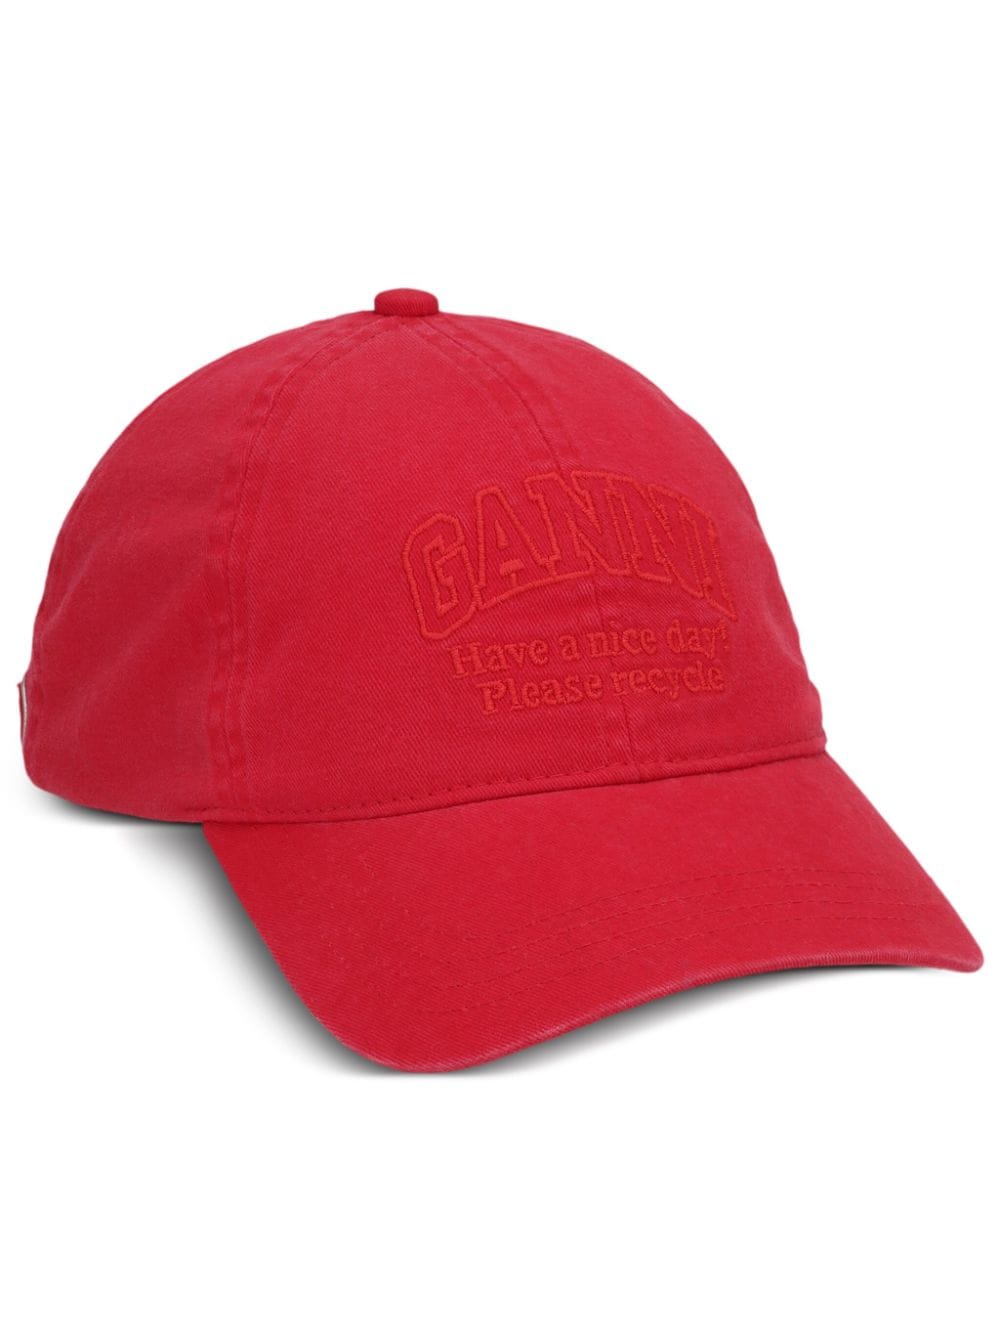 GANNI logo-embroidered cotton cap von GANNI